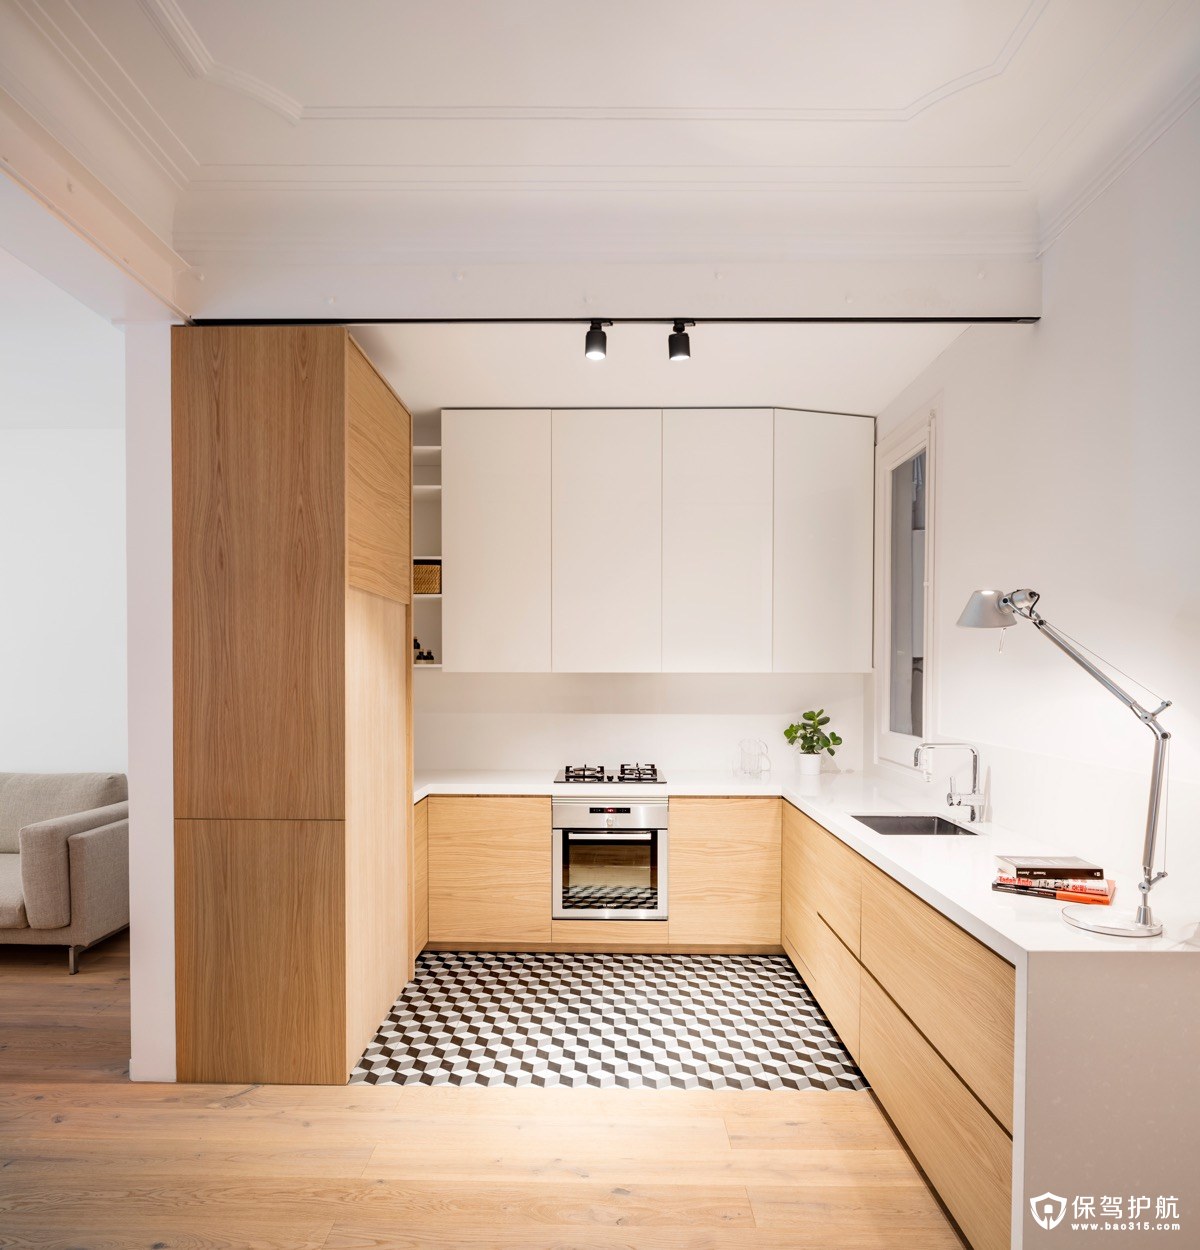 日式风的l型厨房设计,3d的地砖都有延伸放大这个小厨房空间的作用.